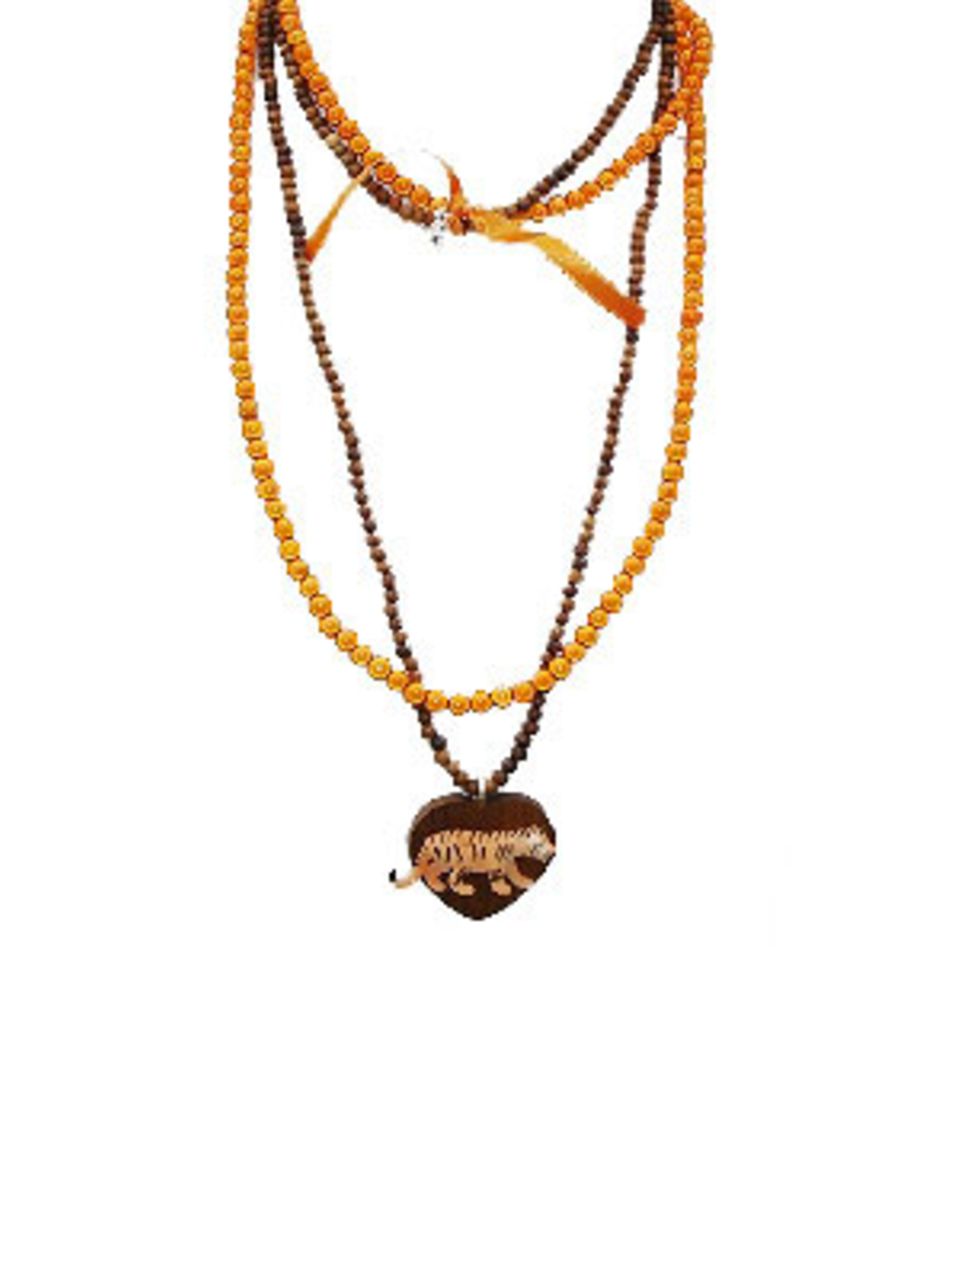 Orangefarbene und braune Perlenketten mit Tiger-Anhänger von Escapulario, um 40 Euro. Über www.escapulario.com.